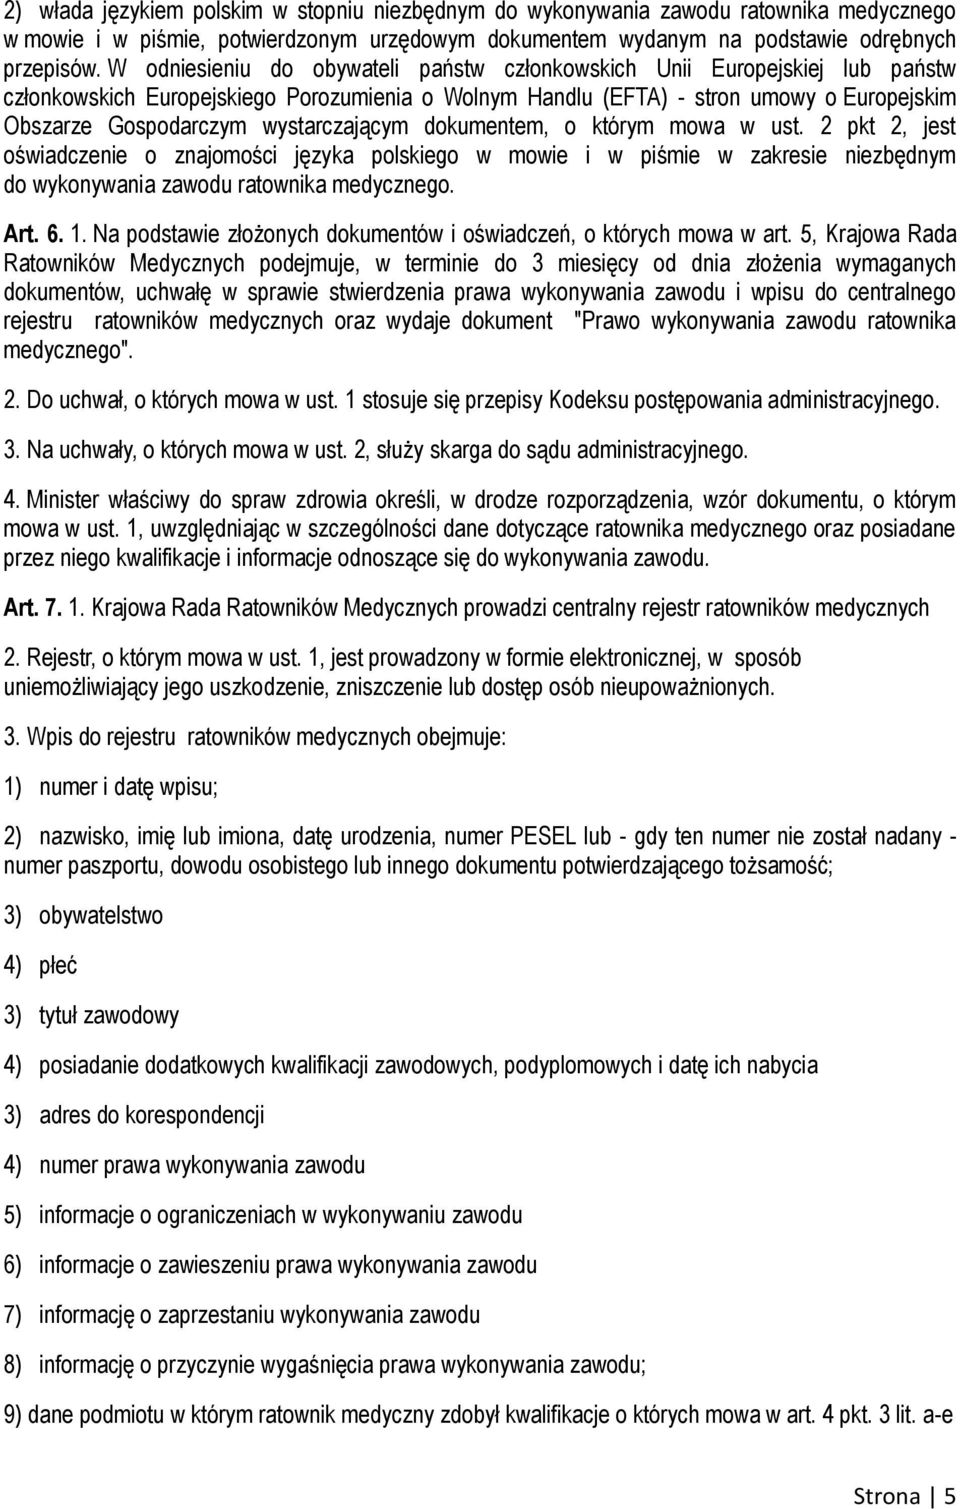 wystarczającym dokumentem, o którym mowa w ust. 2 pkt 2, jest oświadczenie o znajomości języka polskiego w mowie i w piśmie w zakresie niezbędnym do wykonywania zawodu ratownika medycznego. Art. 6. 1.